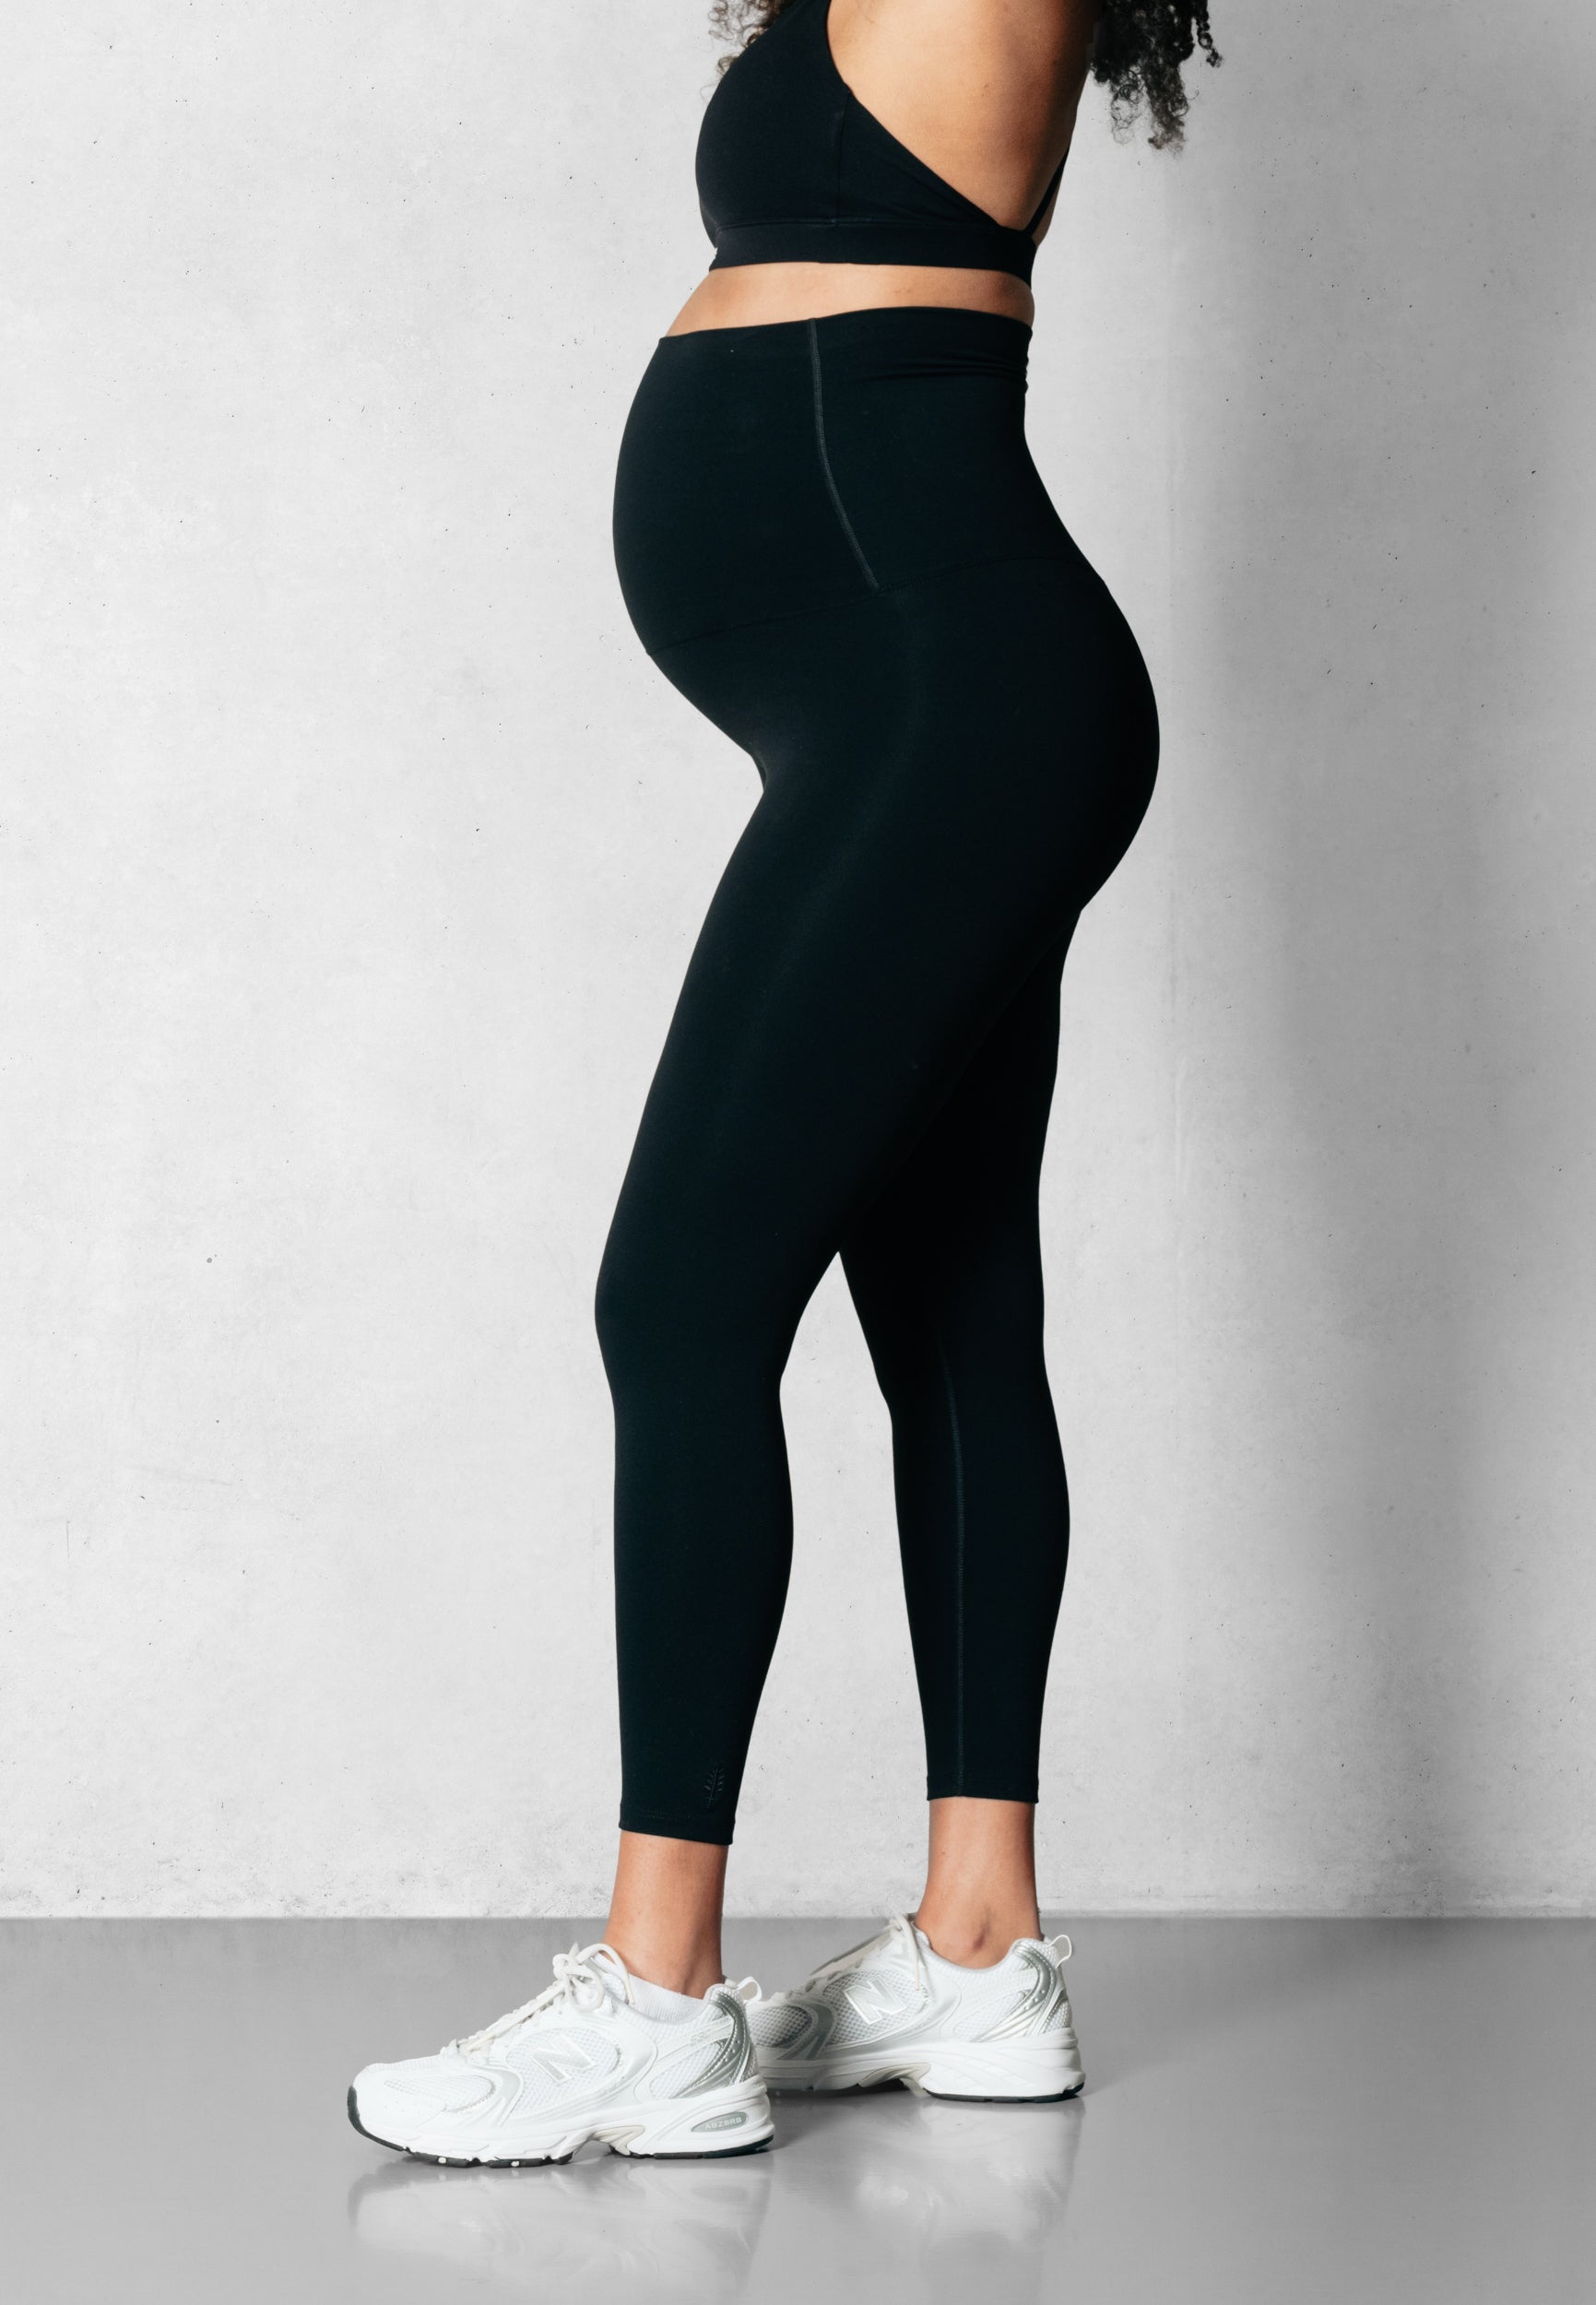 V-Shape Schwangerschaftsstrumpfhose - Extra hohe Taille - Schwarz